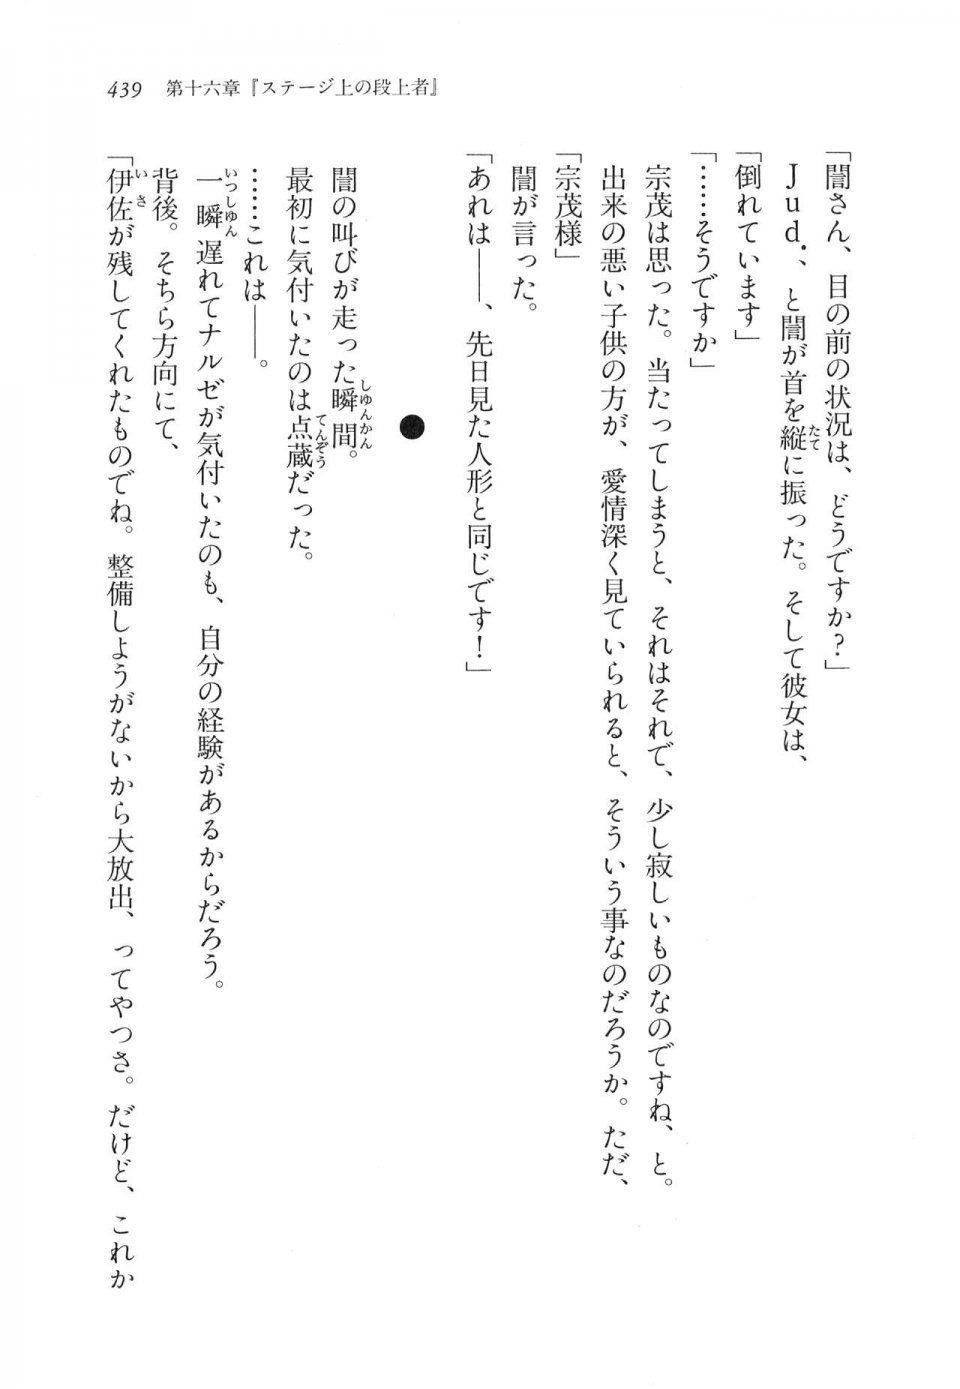 Kyoukai Senjou no Horizon LN Vol 11(5A) - Photo #439